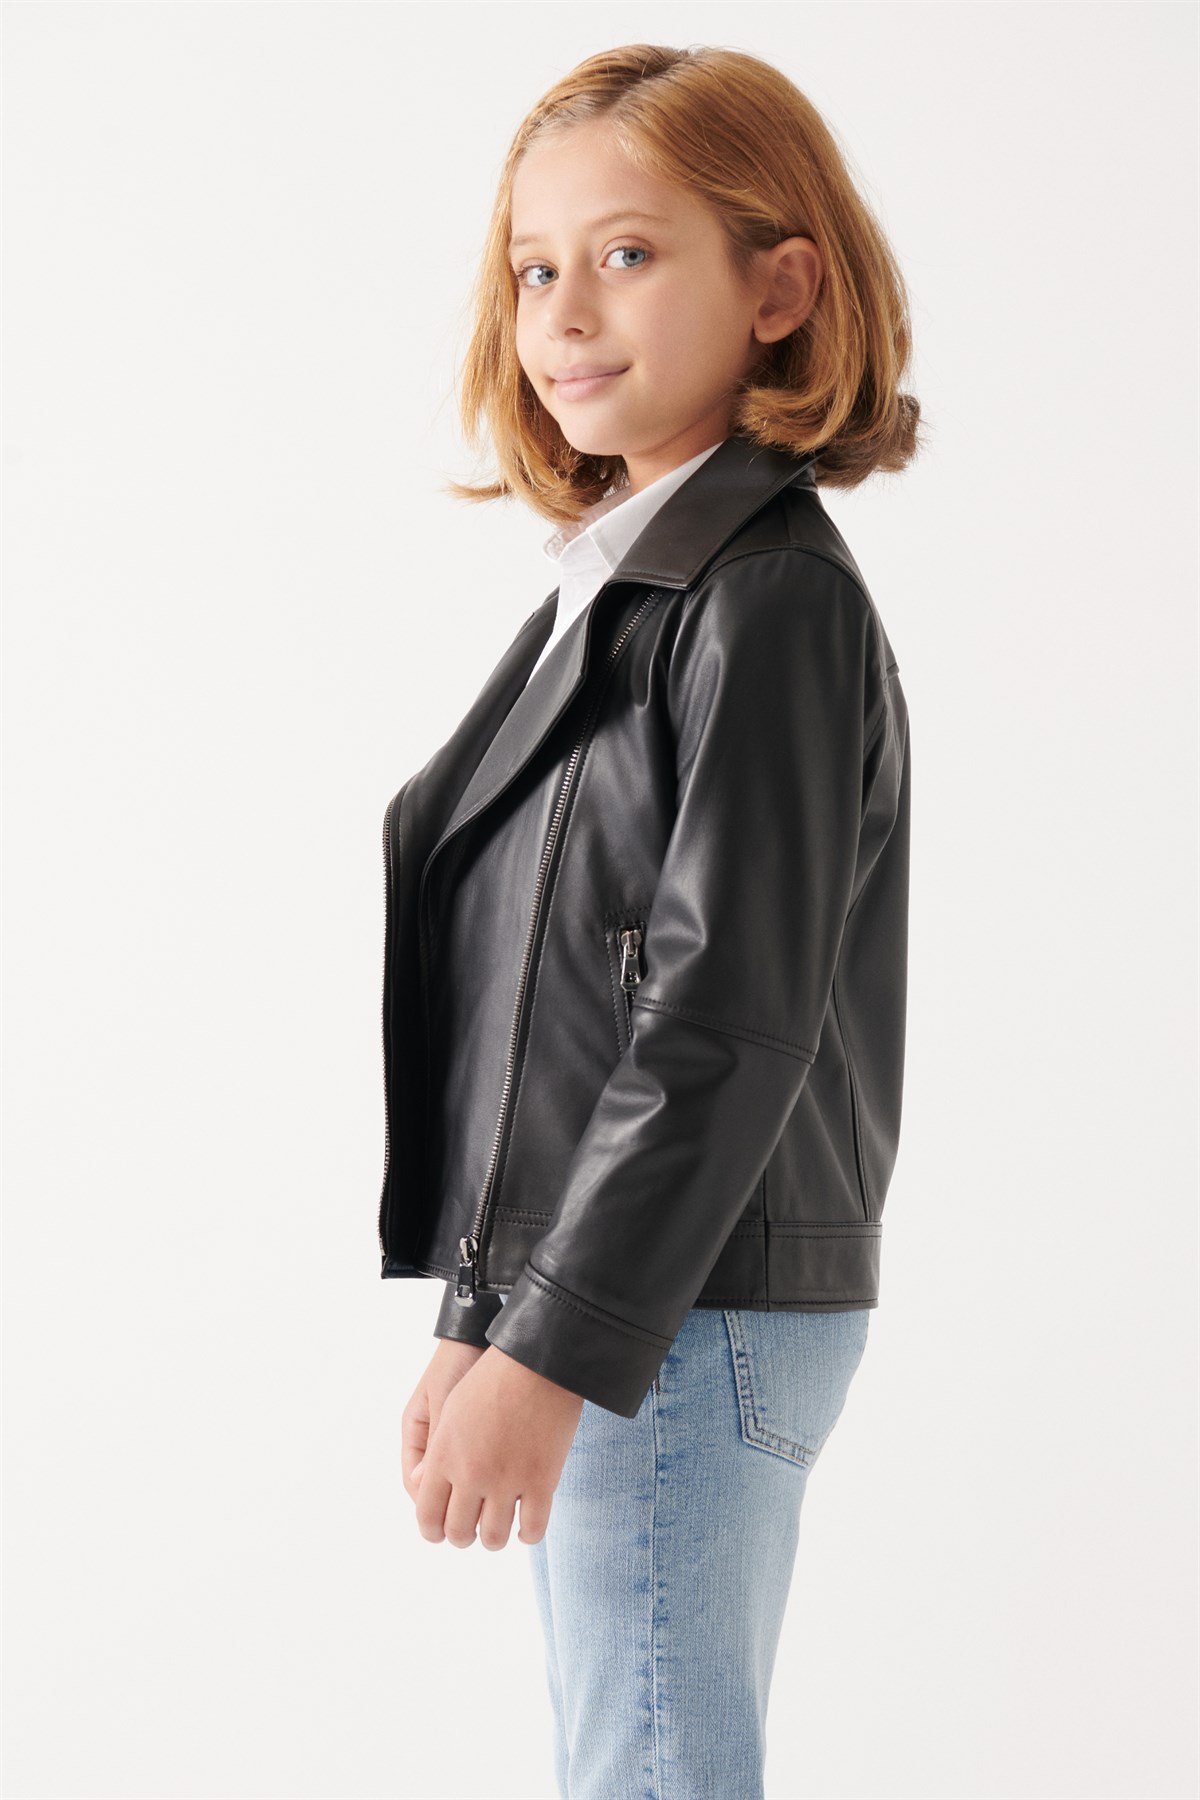 LARA Girls Black Leather Jacket | Girls Leather and Shearling Jacket & Coat